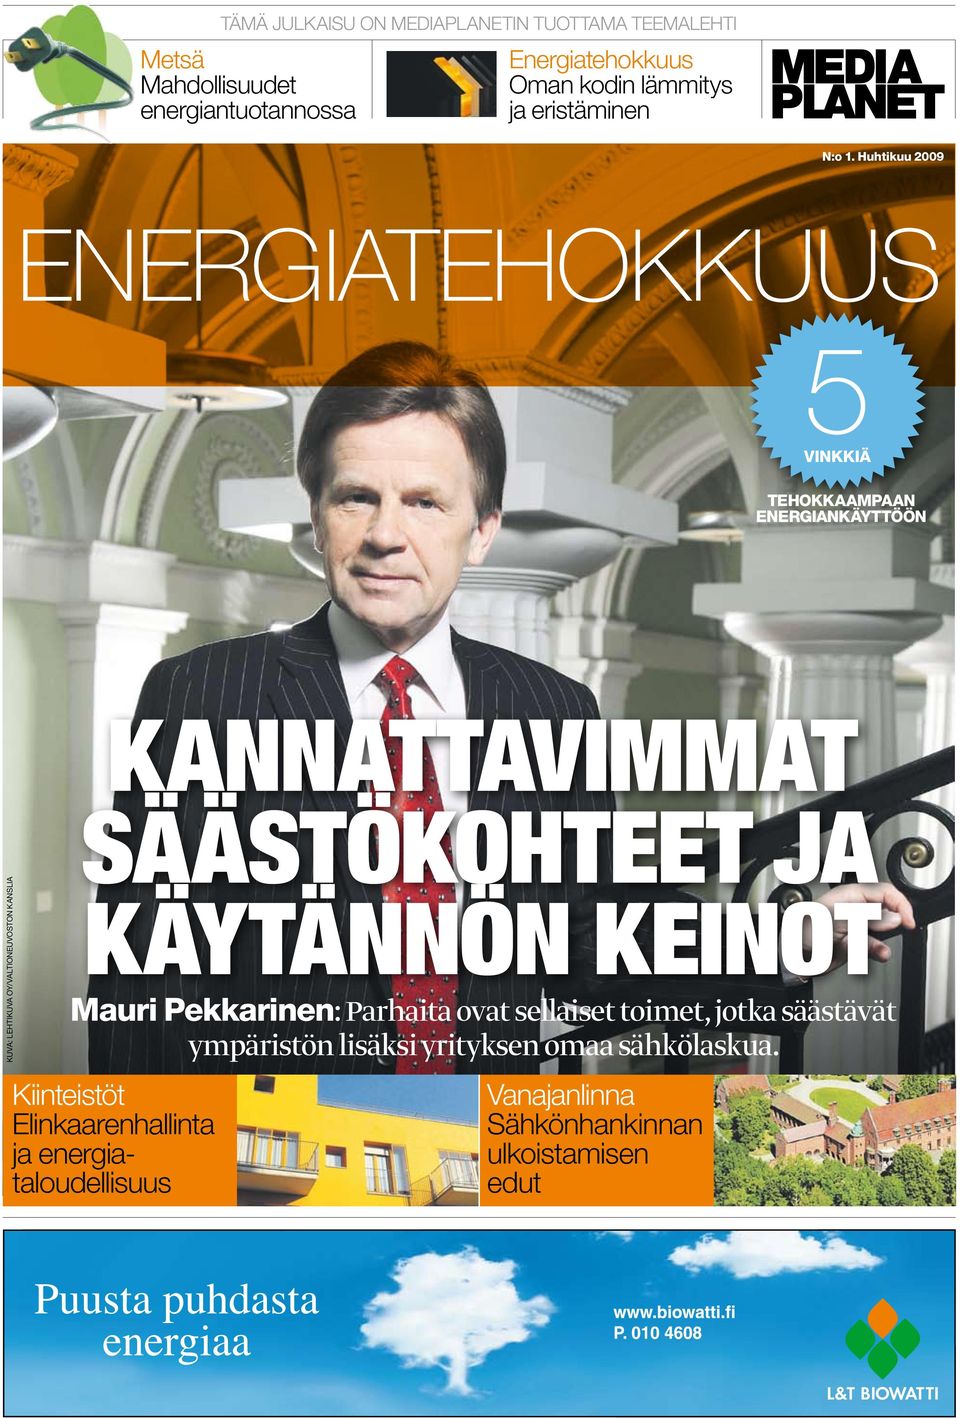 Huhtikuu 2009 energiatehokkuus tehokkaampaan energiankäyttöön kuva: Lehtikuva Oy/Valtioneuvoston kanslia kannattavimmat